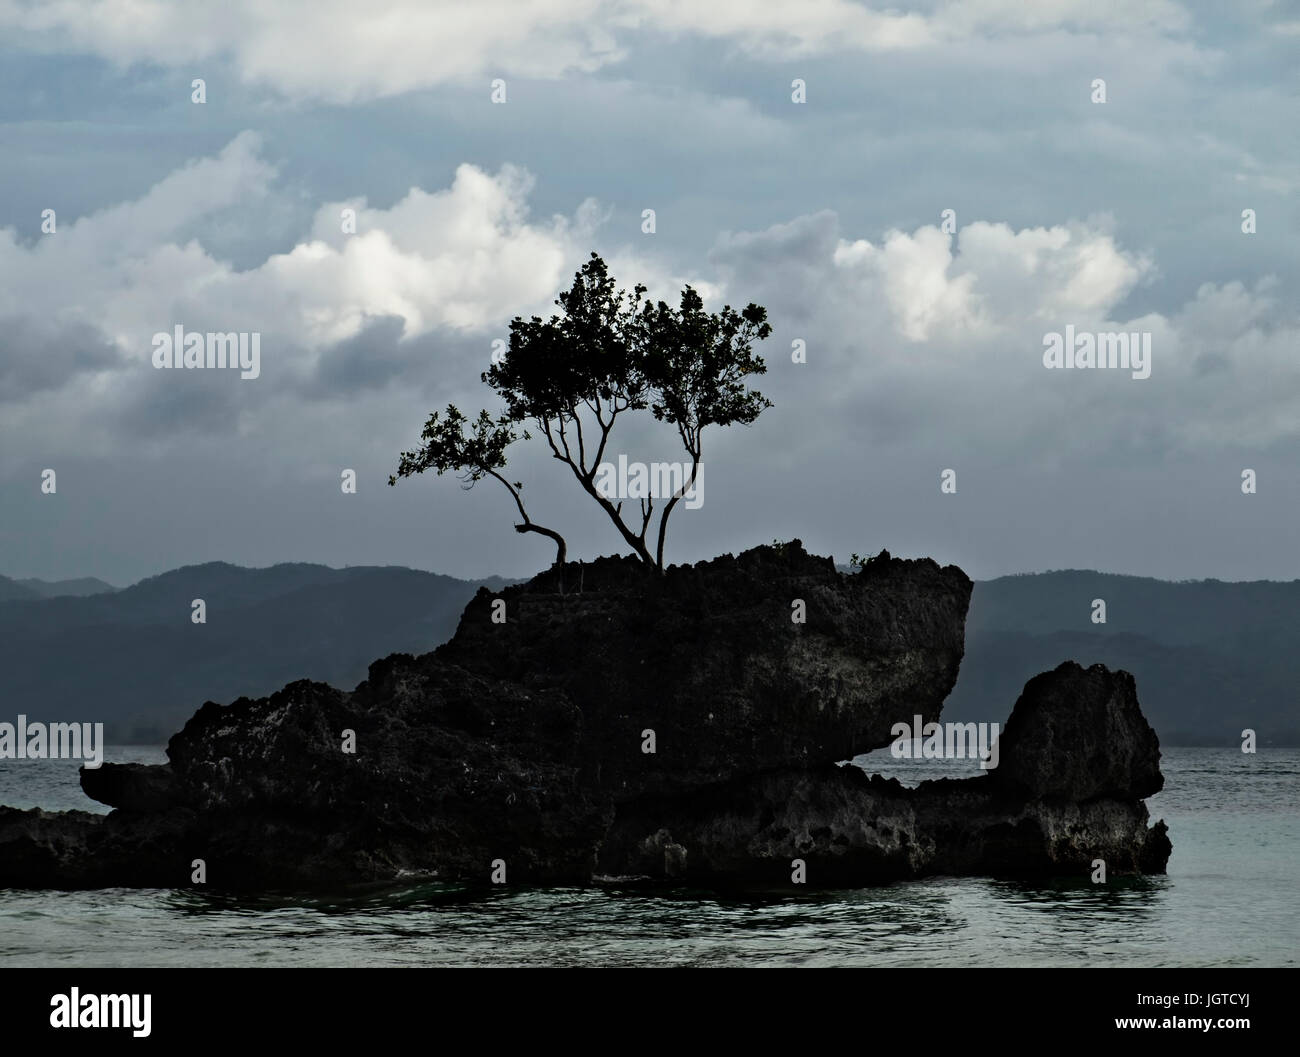 Baum auf Felsen im Meer vor Gewitterhimmel auf der Insel Boracay, Philippinen Stockfoto